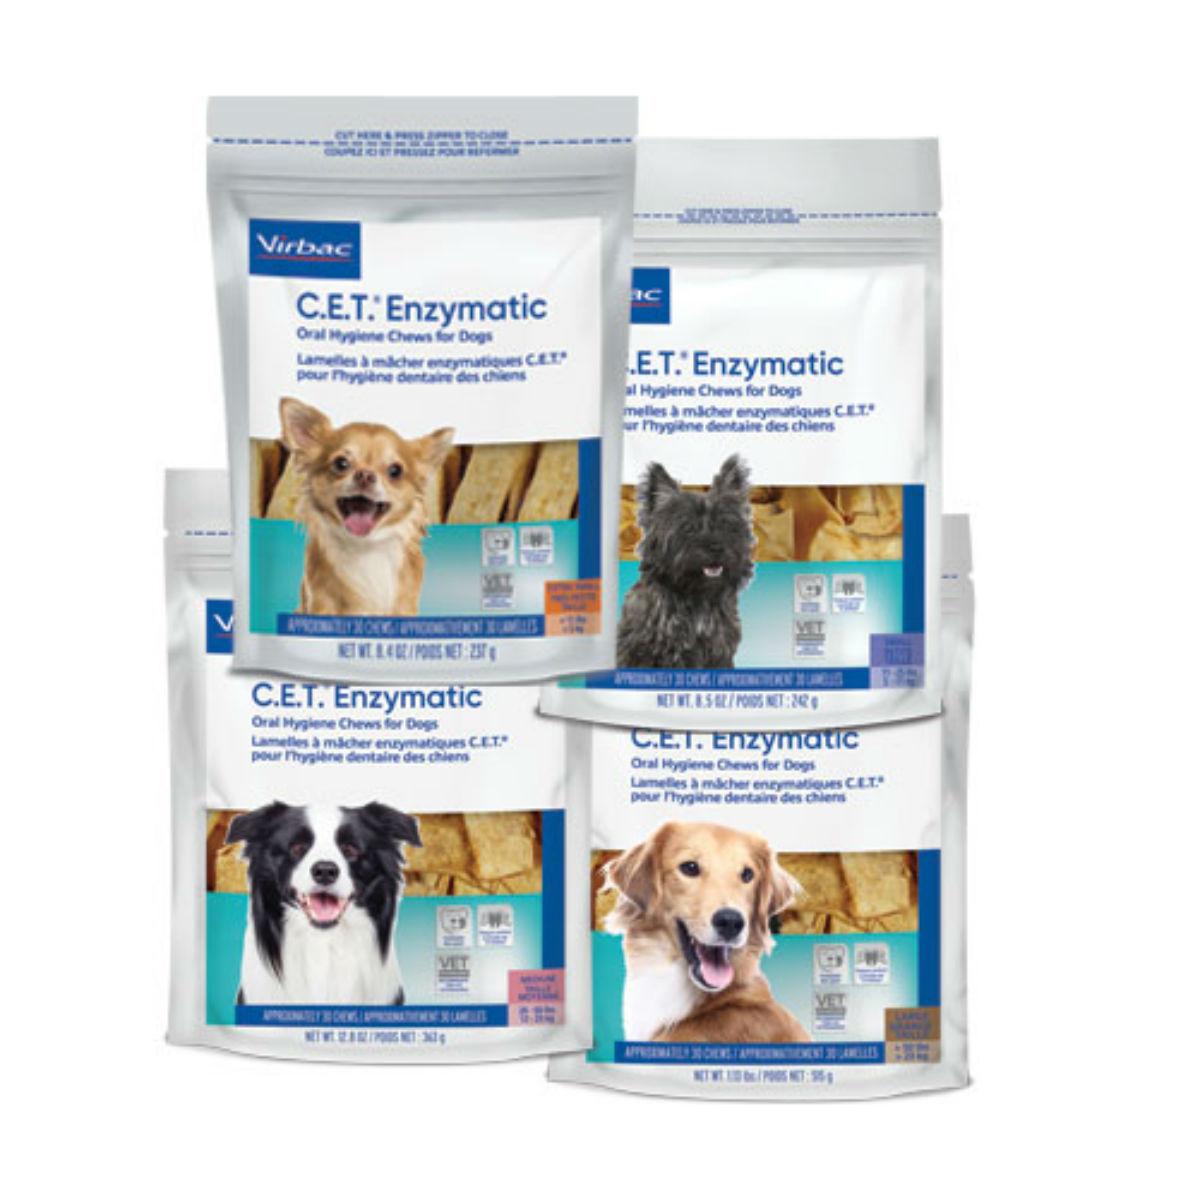 virbac-cet-enzymatic-oral-hygiene-chews-for-dogs